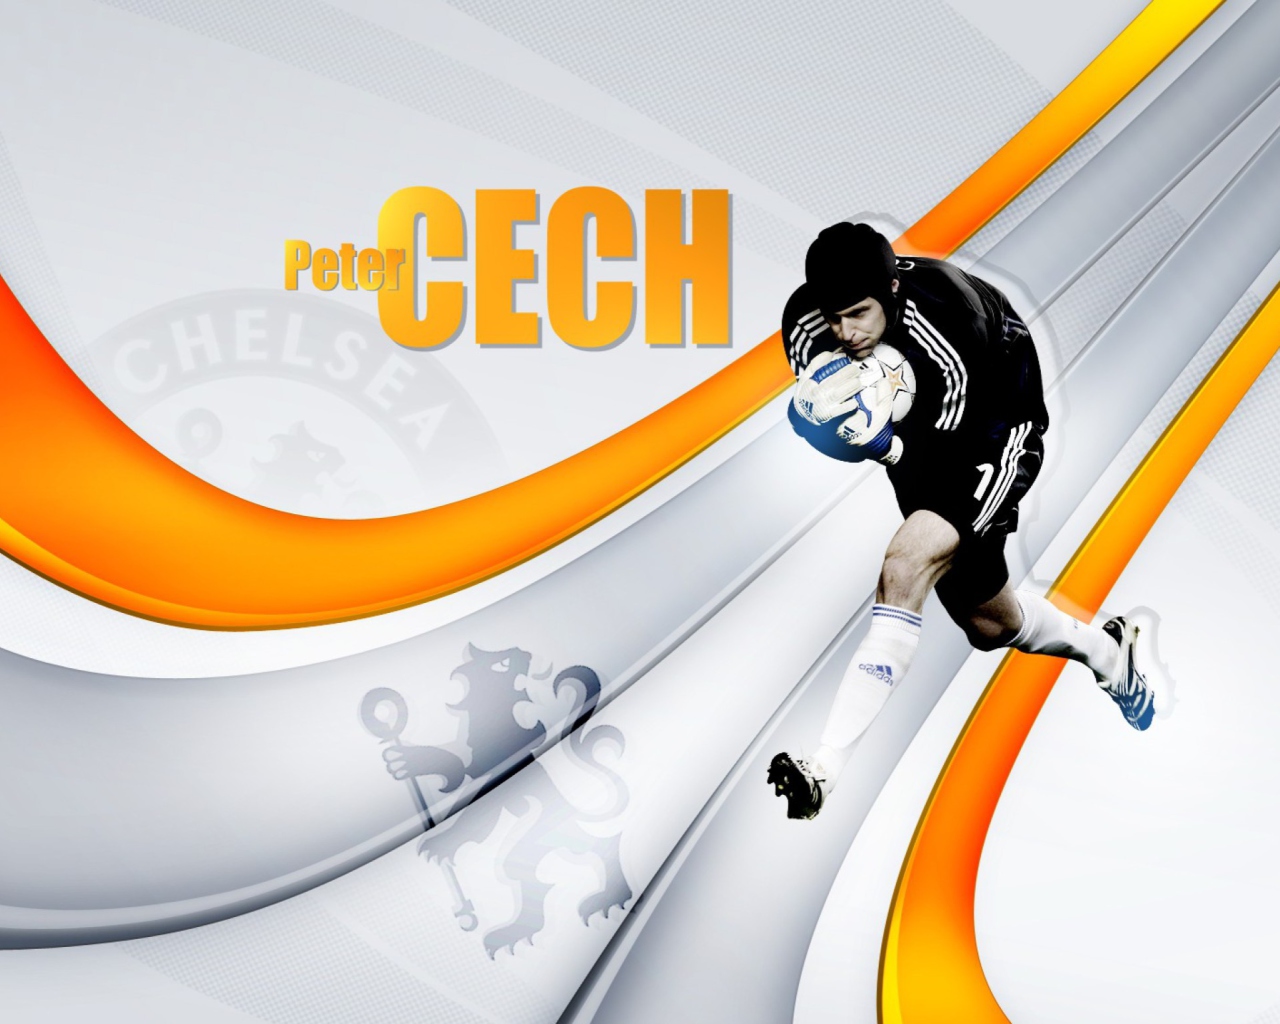 Peter Cech screenshot #1 1280x1024